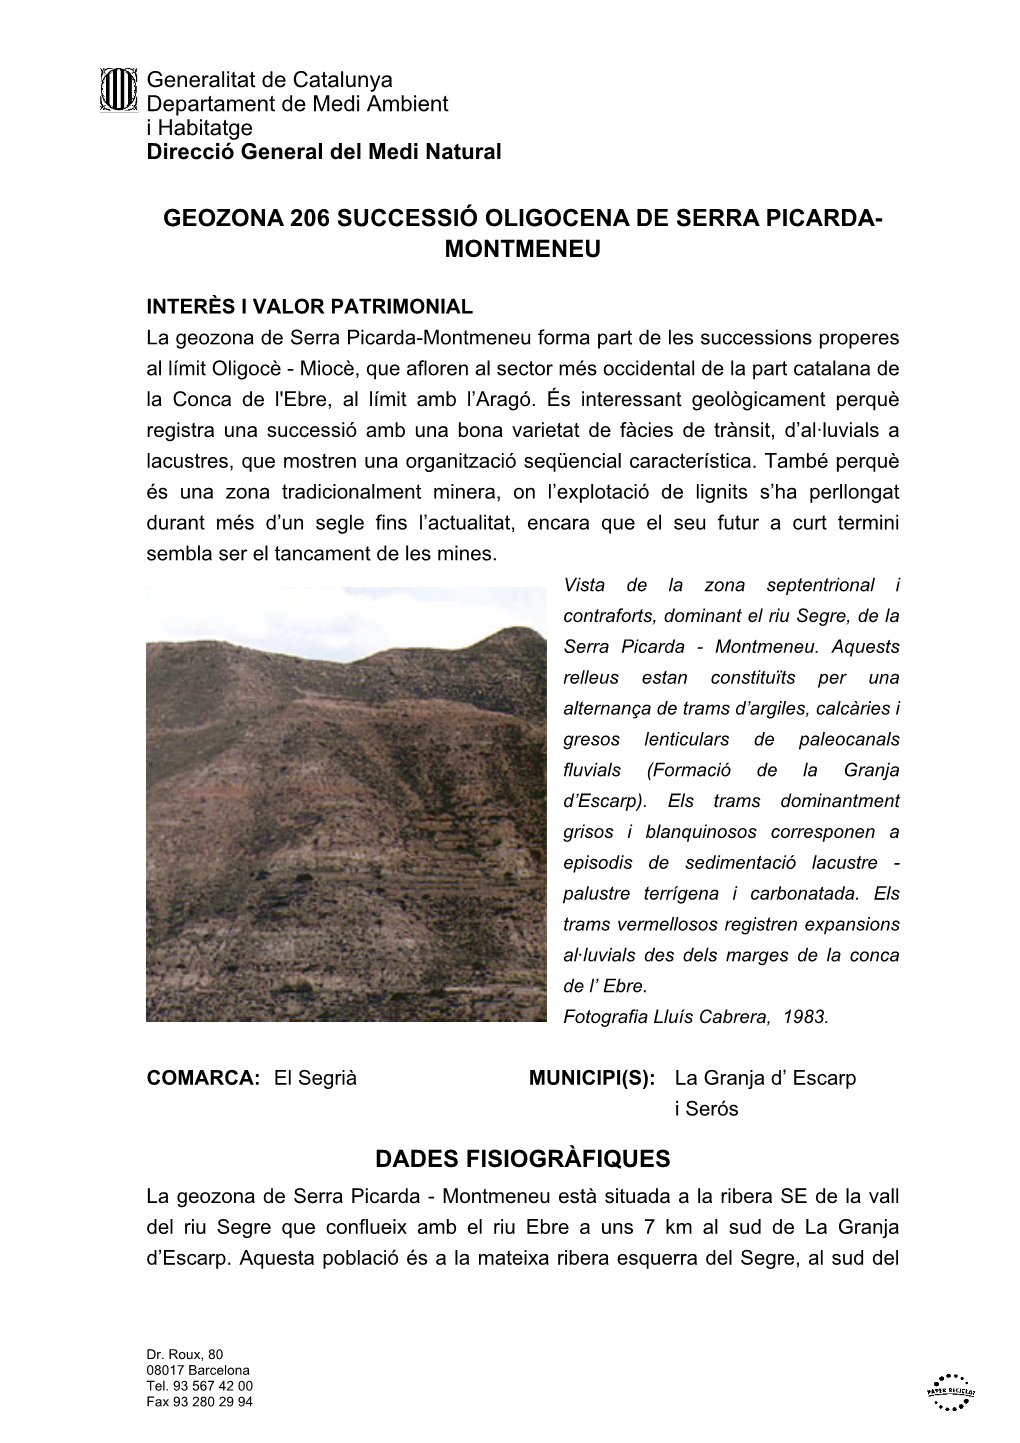 Geozona 206 Successió Oligocena De Serra Picarda- Montmeneu